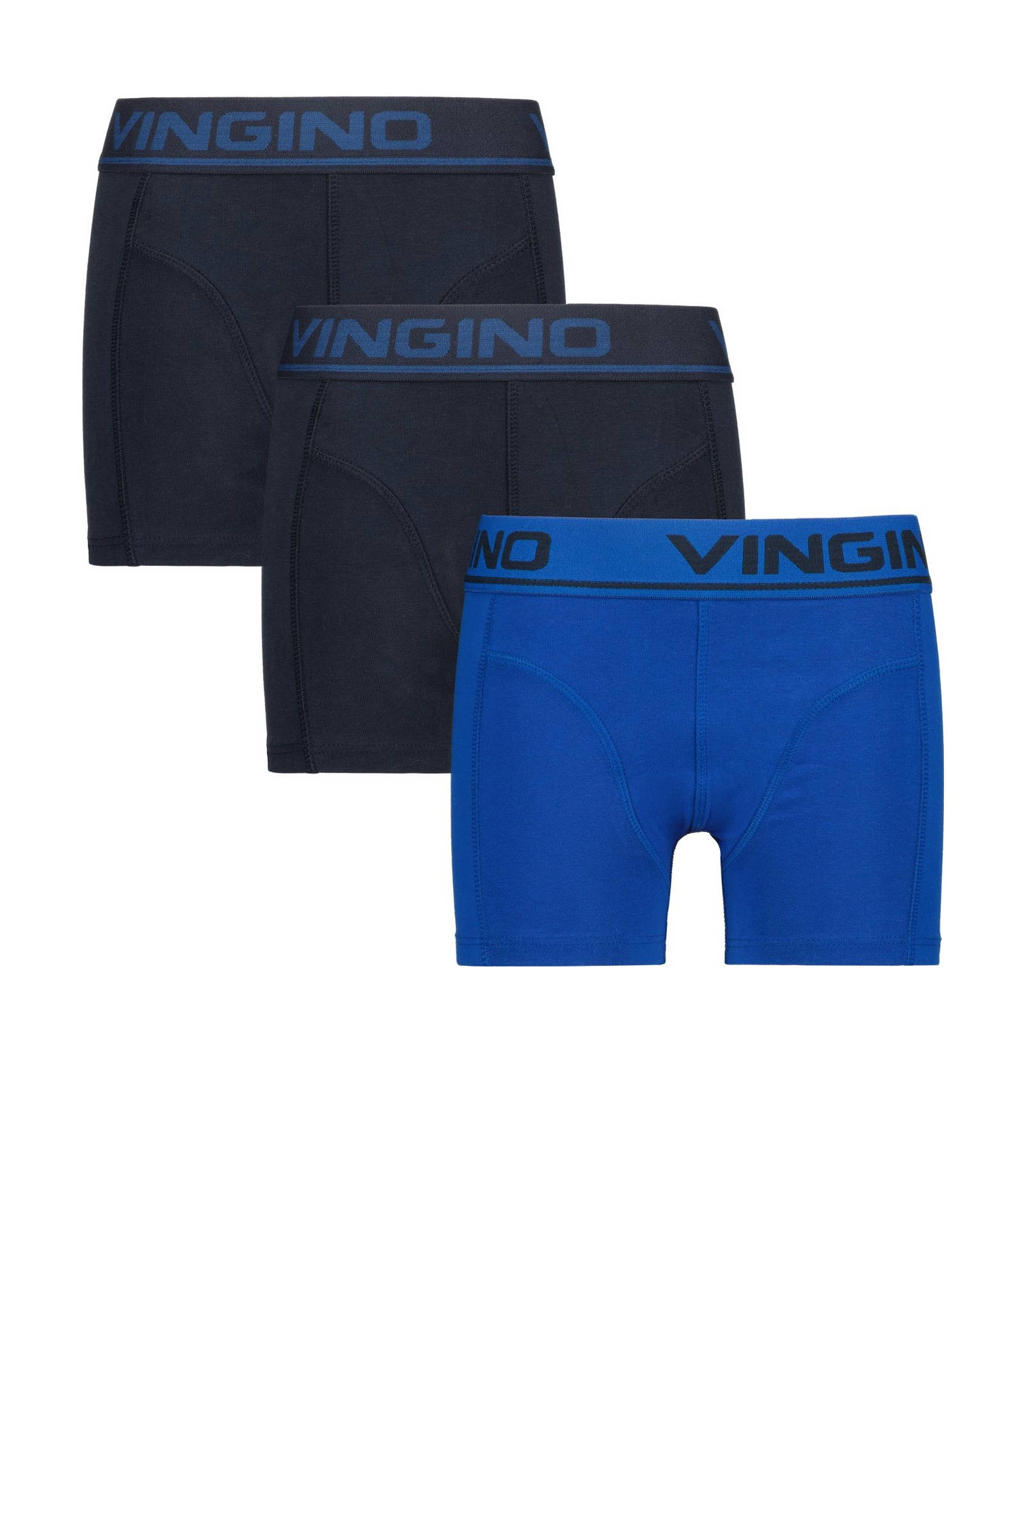 Vingino   boxershort - set van 3 blauw/donkerblauw